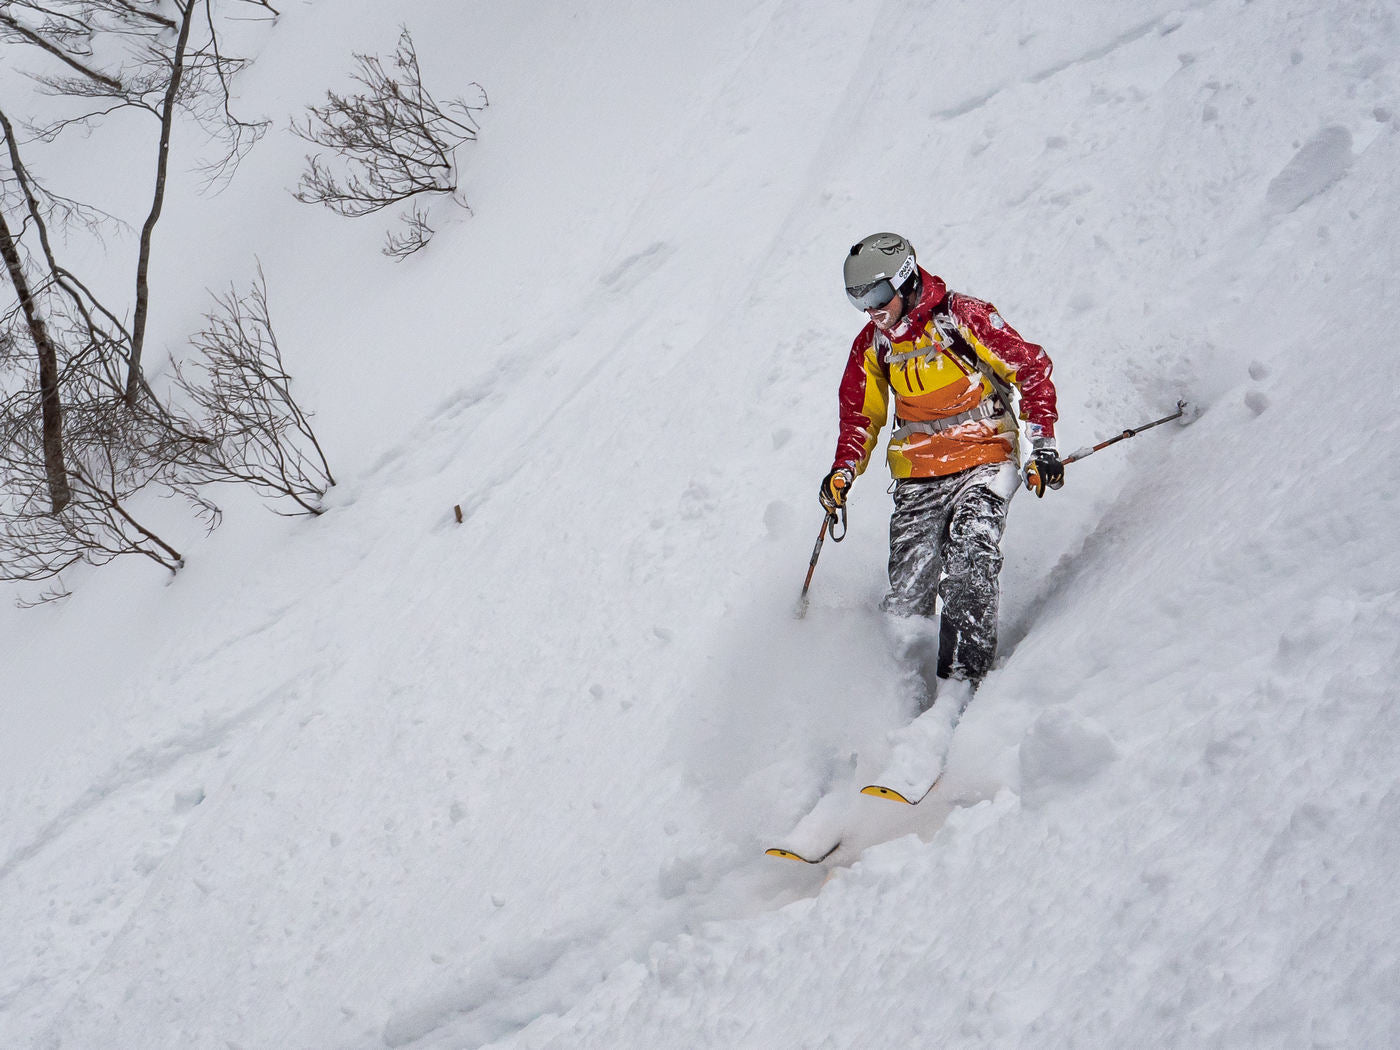 Gnarly Owl Gnarnia jízda prašanem freeride powder sluneční brýle japonsko japow česká značka lyžař v hlubokém prašanu